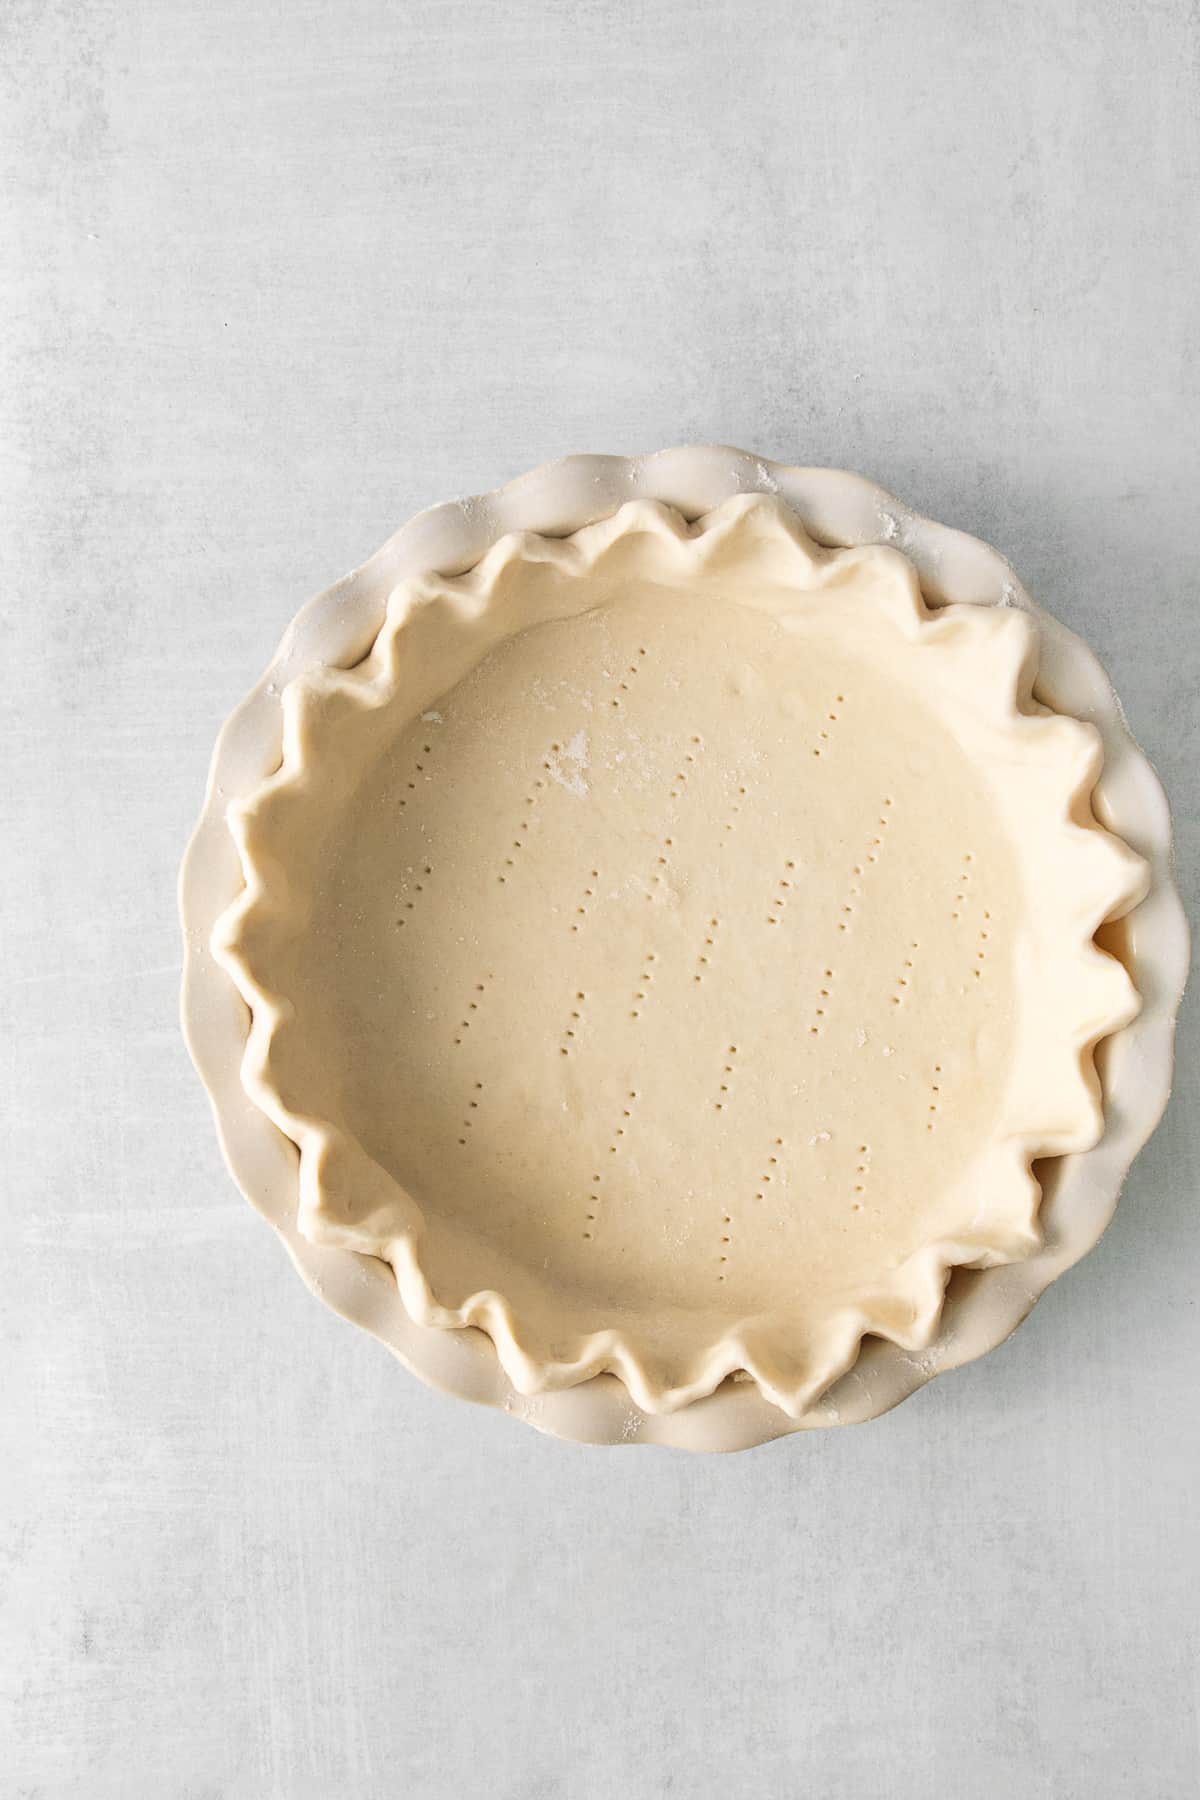 Homemade pie crust for quiche lorraine.